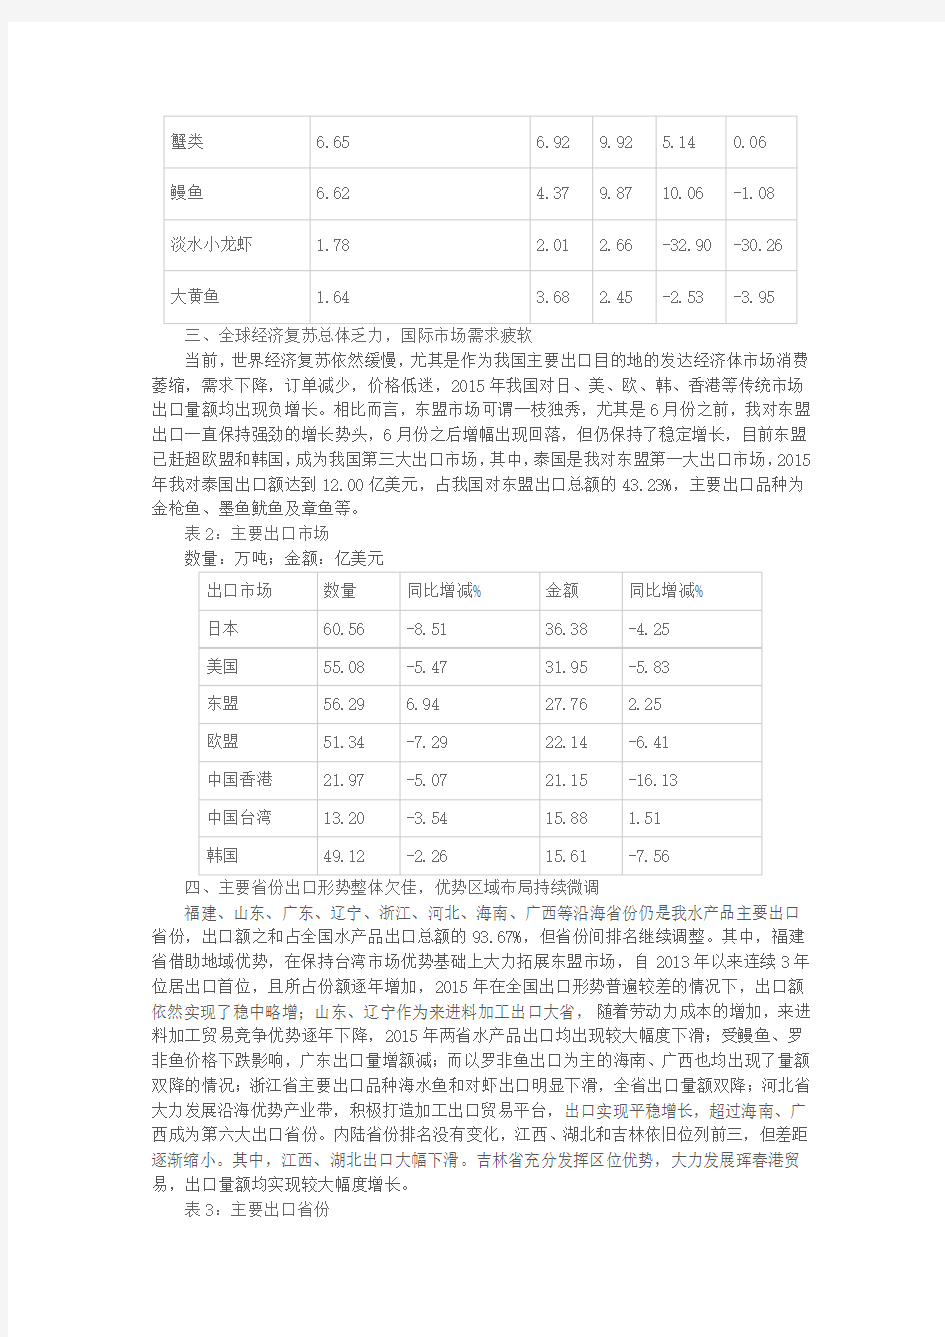 2015年中国水产品进出口贸易情况